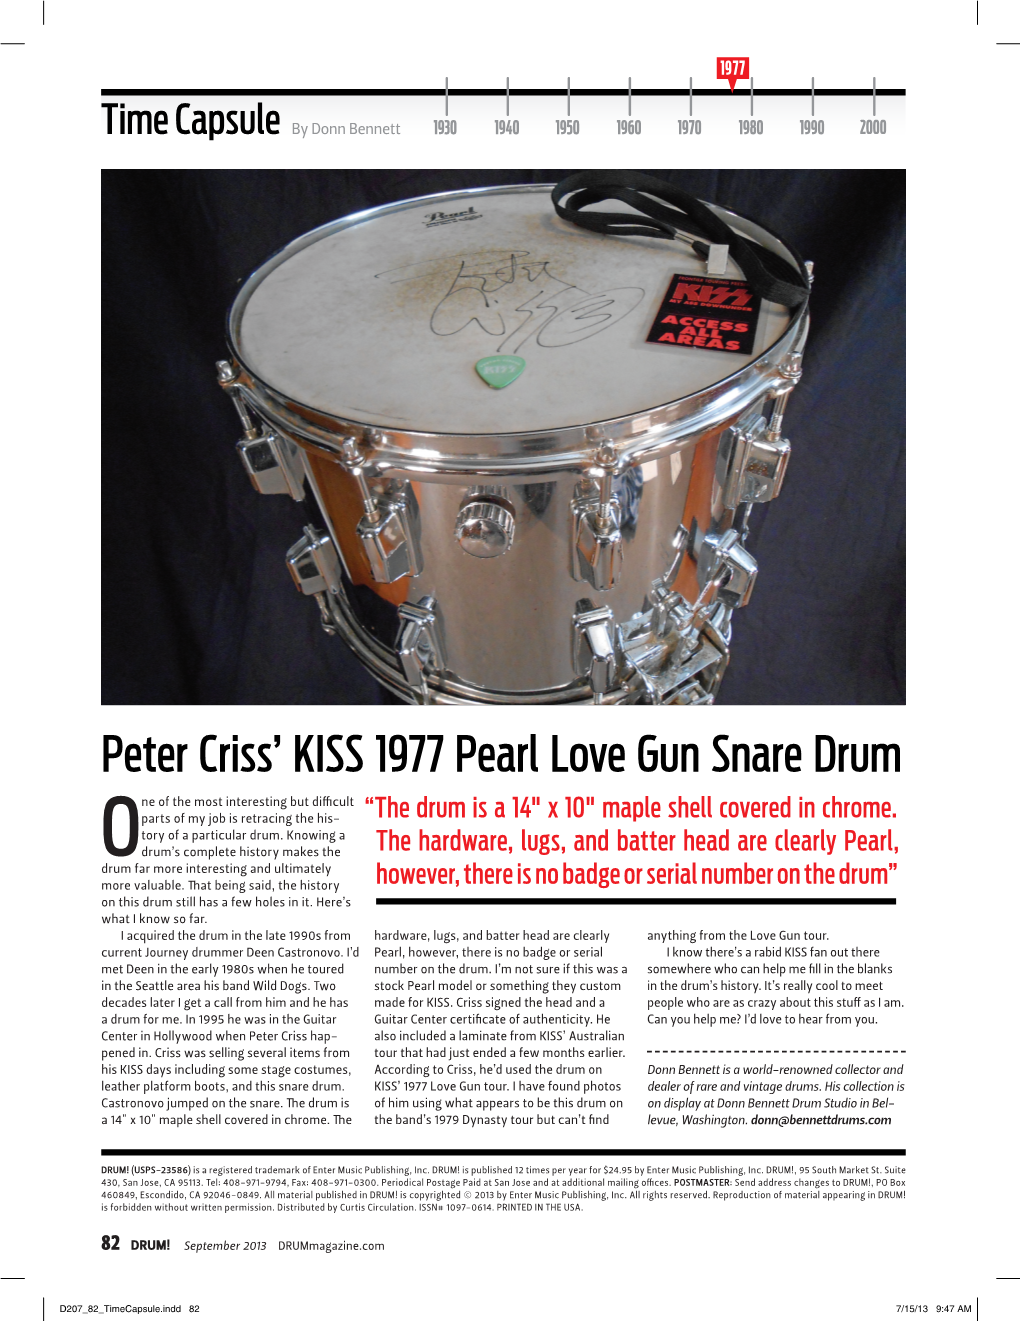 Peter Criss' KISS 1977 Pearl Love Gun Snare Drum